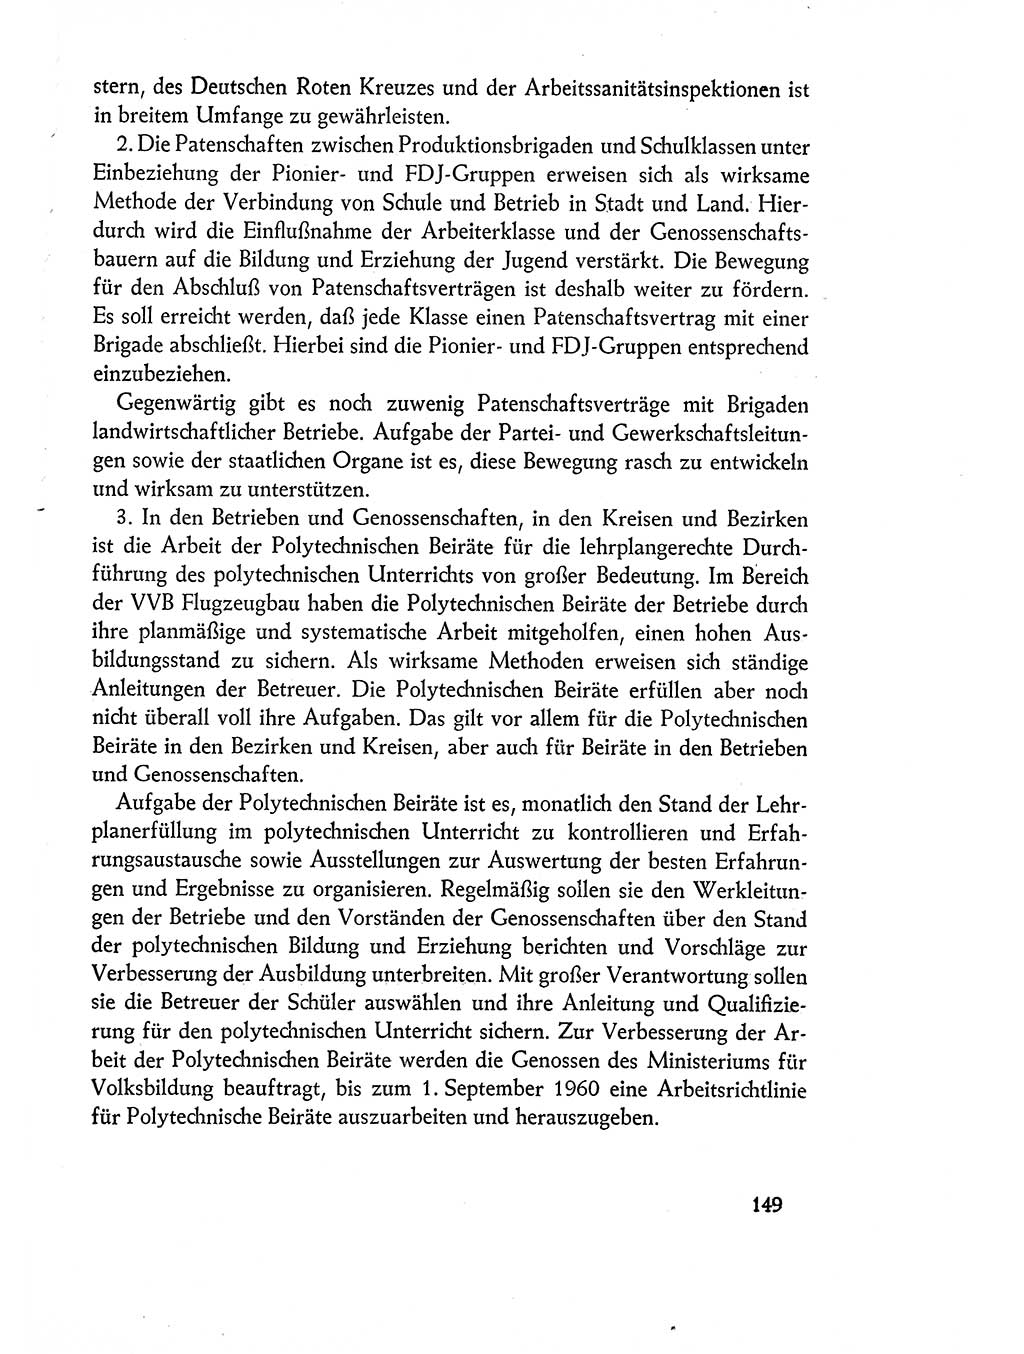 Dokumente der Sozialistischen Einheitspartei Deutschlands (SED) [Deutsche Demokratische Republik (DDR)] 1960-1961, Seite 149 (Dok. SED DDR 1960-1961, S. 149)